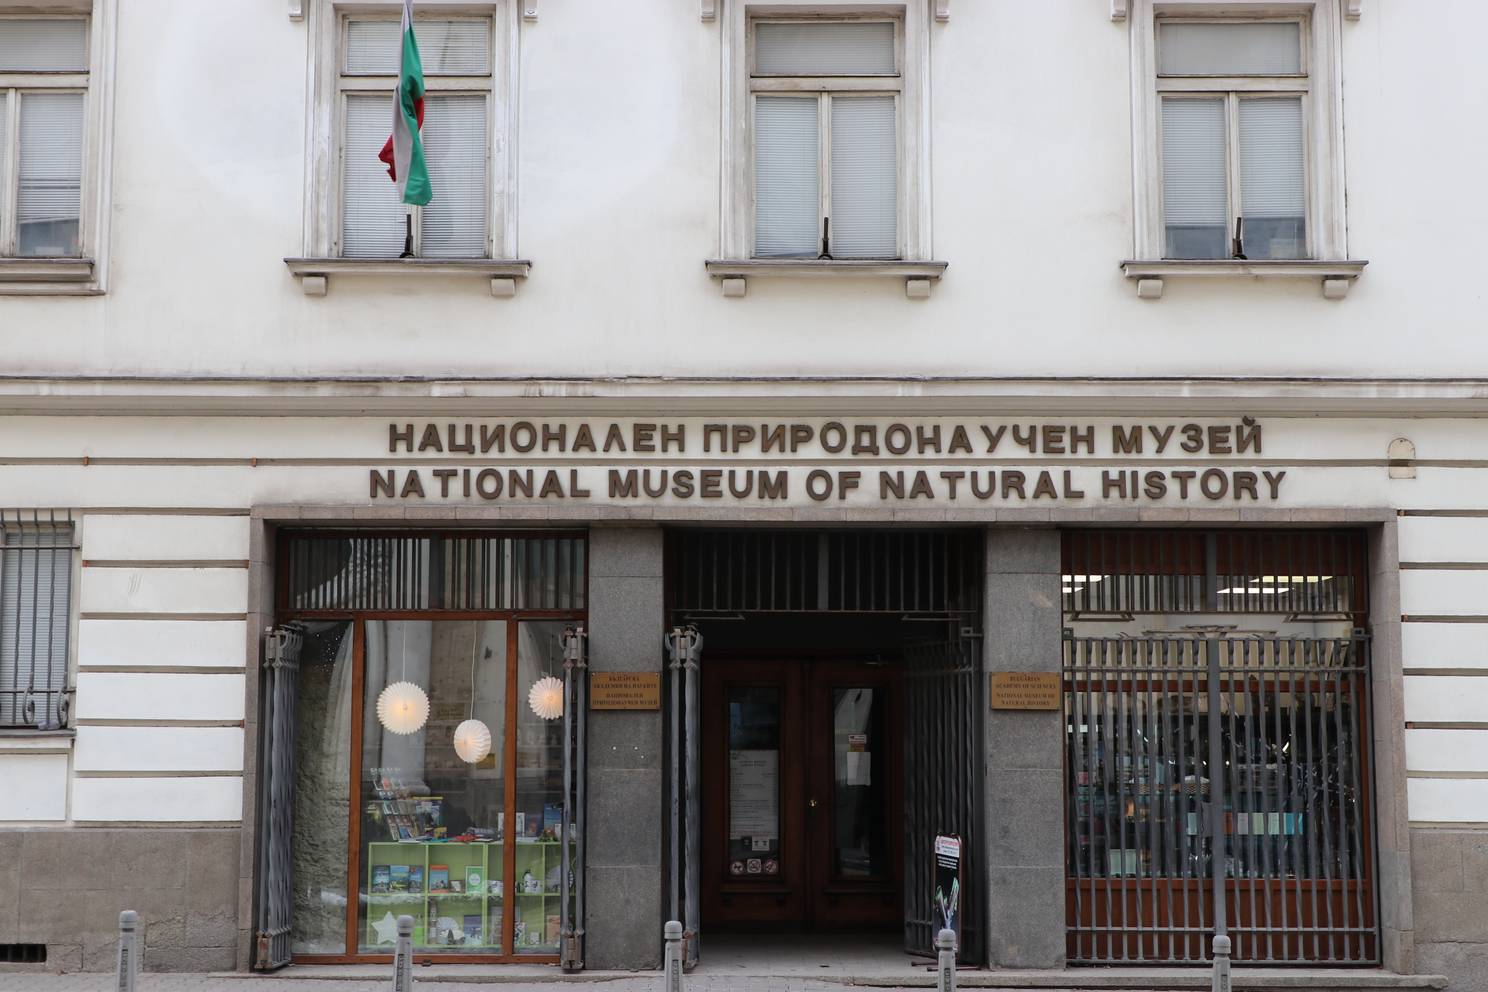 Национален природонаучен музей